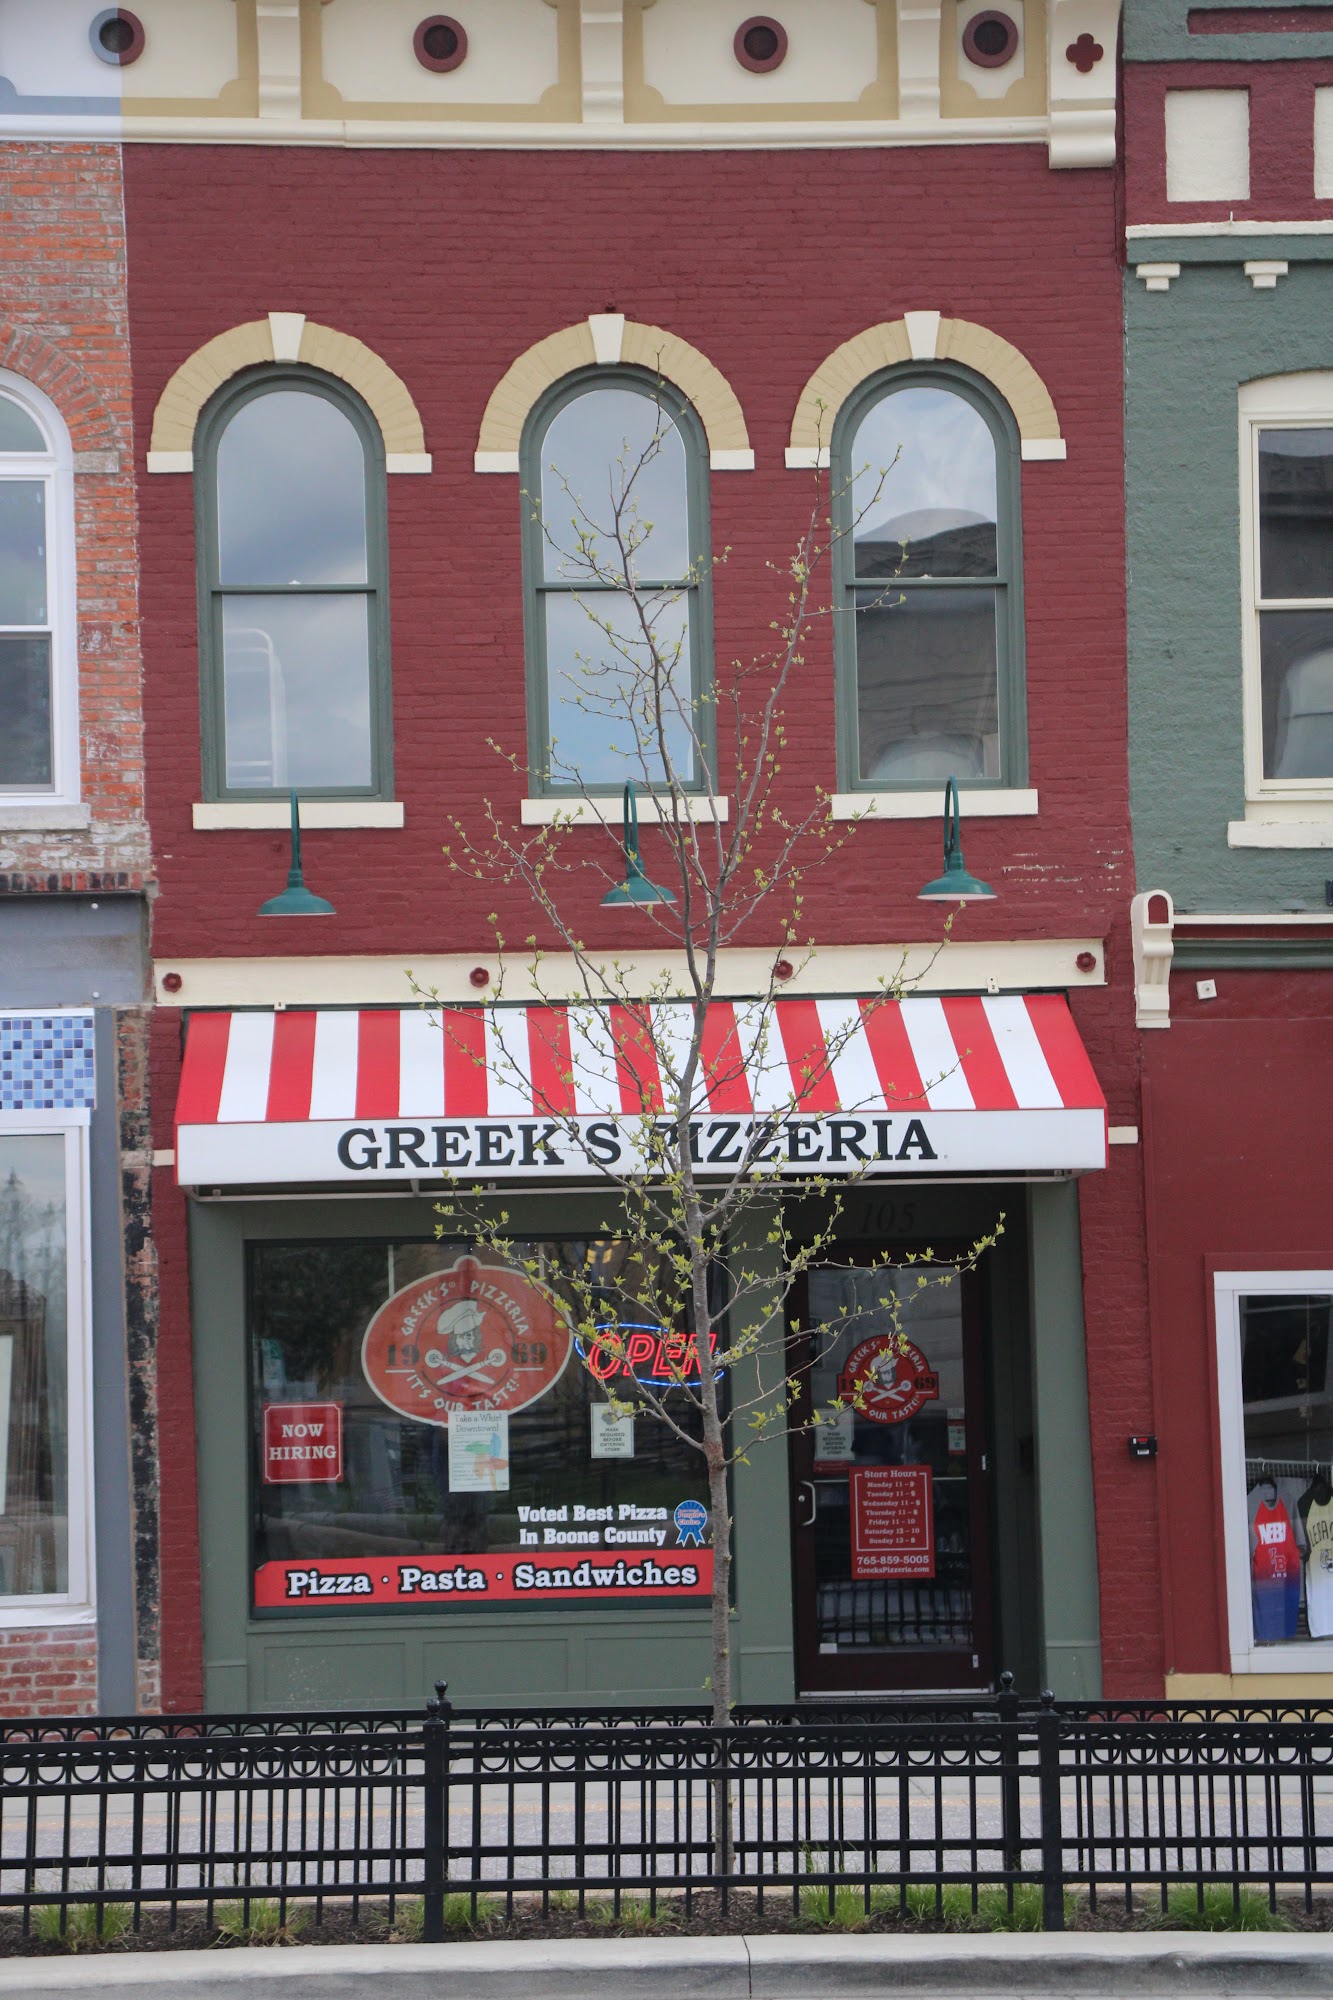 Greek's Pizzeria